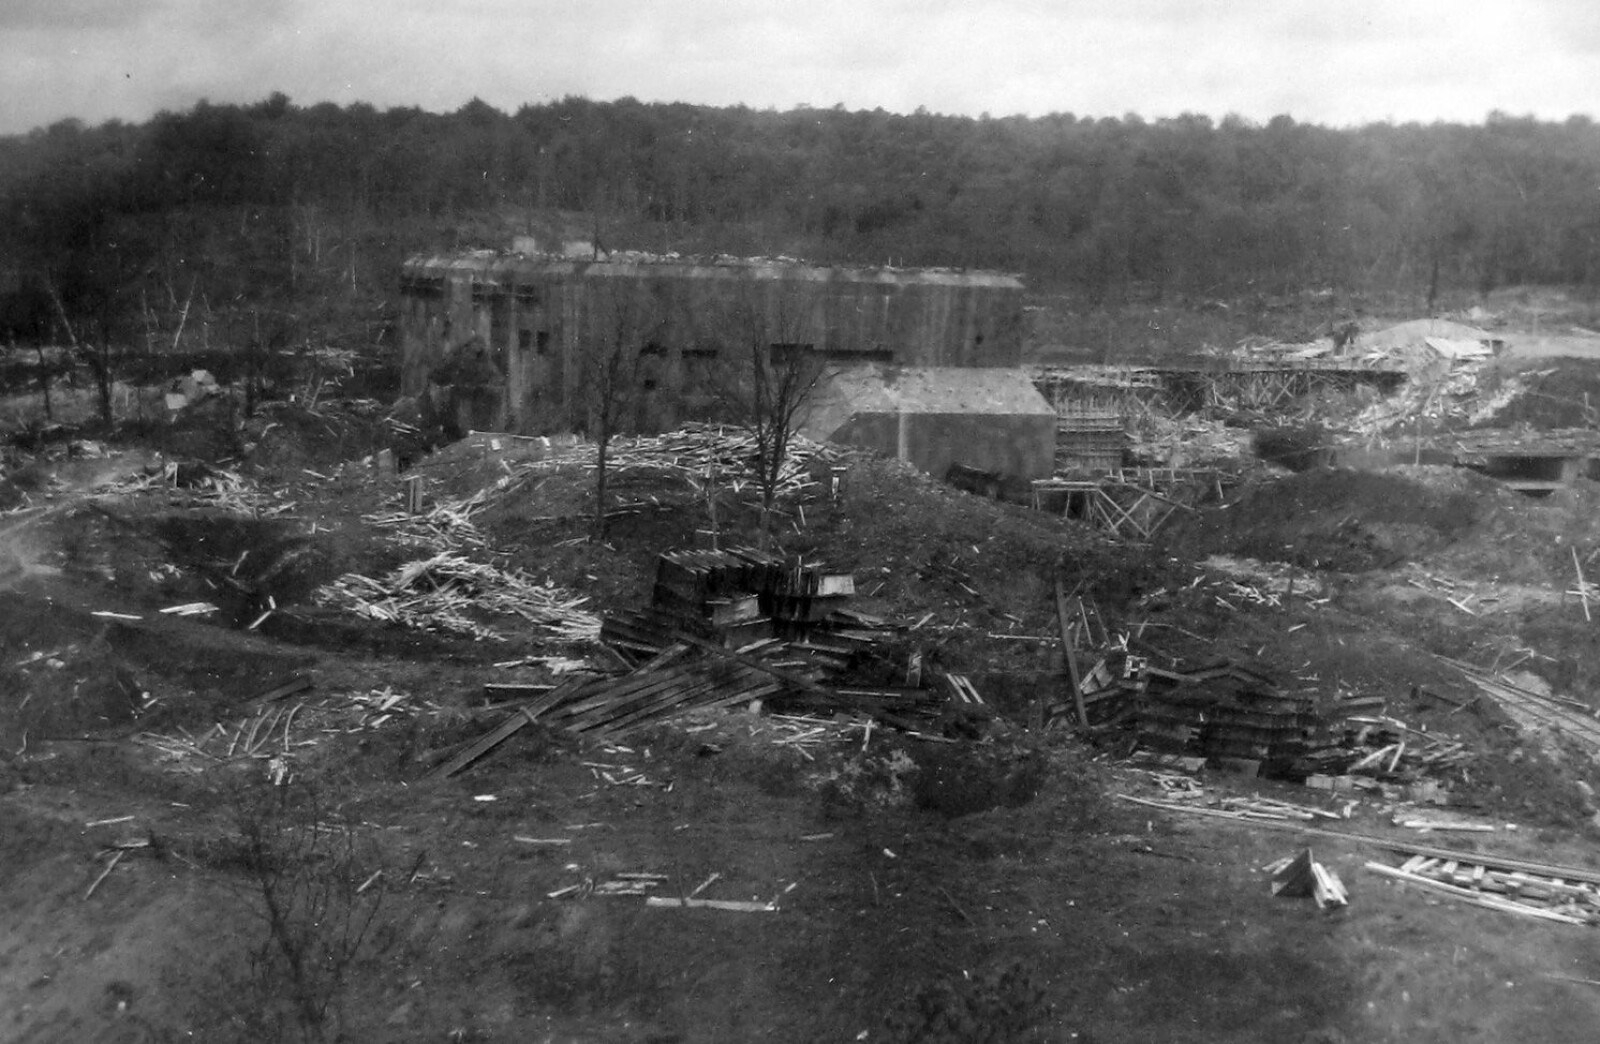 <b>WATTEN:</b> I august 1943 slet 6 000 tvangsarbeidere fra den halvmilitære Organisation Todt døgnet rundt under umenneskelige forhold med å lage den gigantiske bunkeren. 